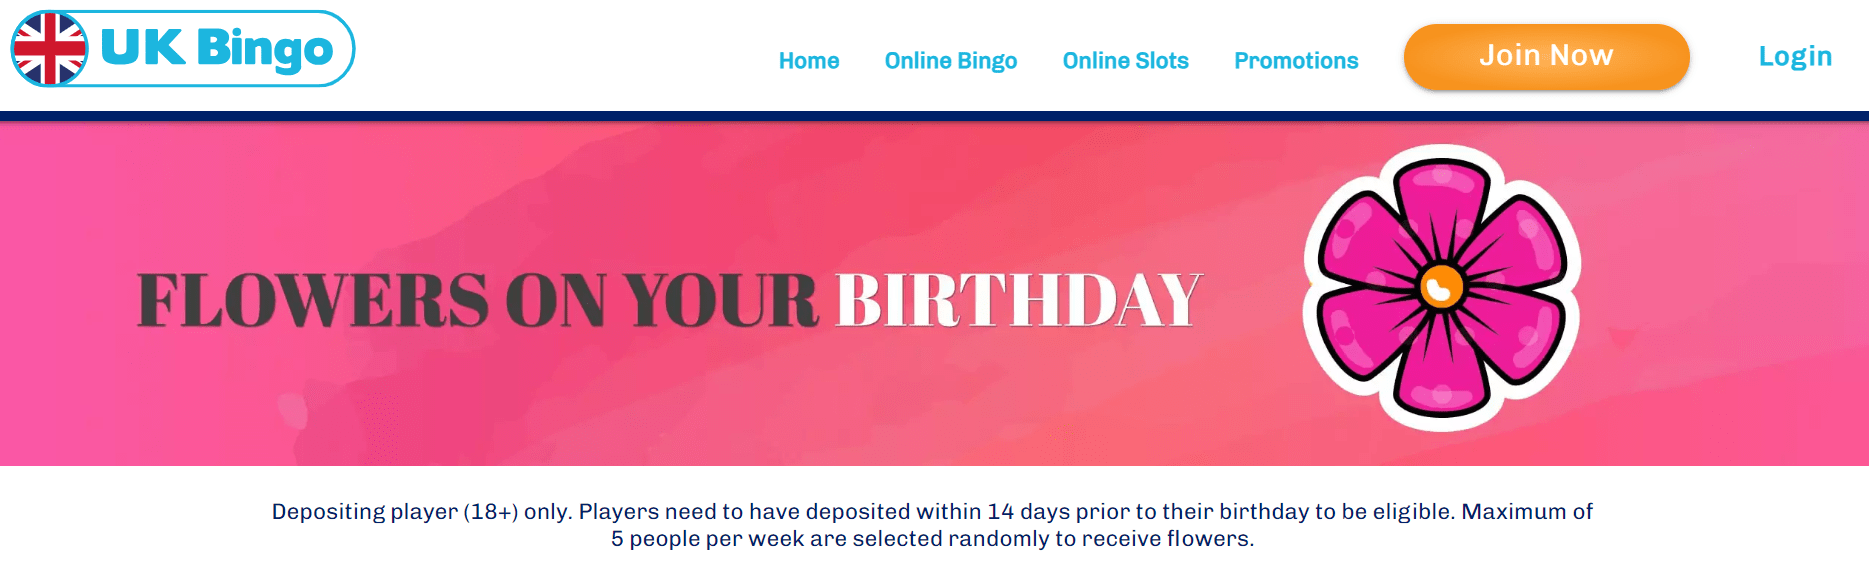 uk bingo birthday bonus